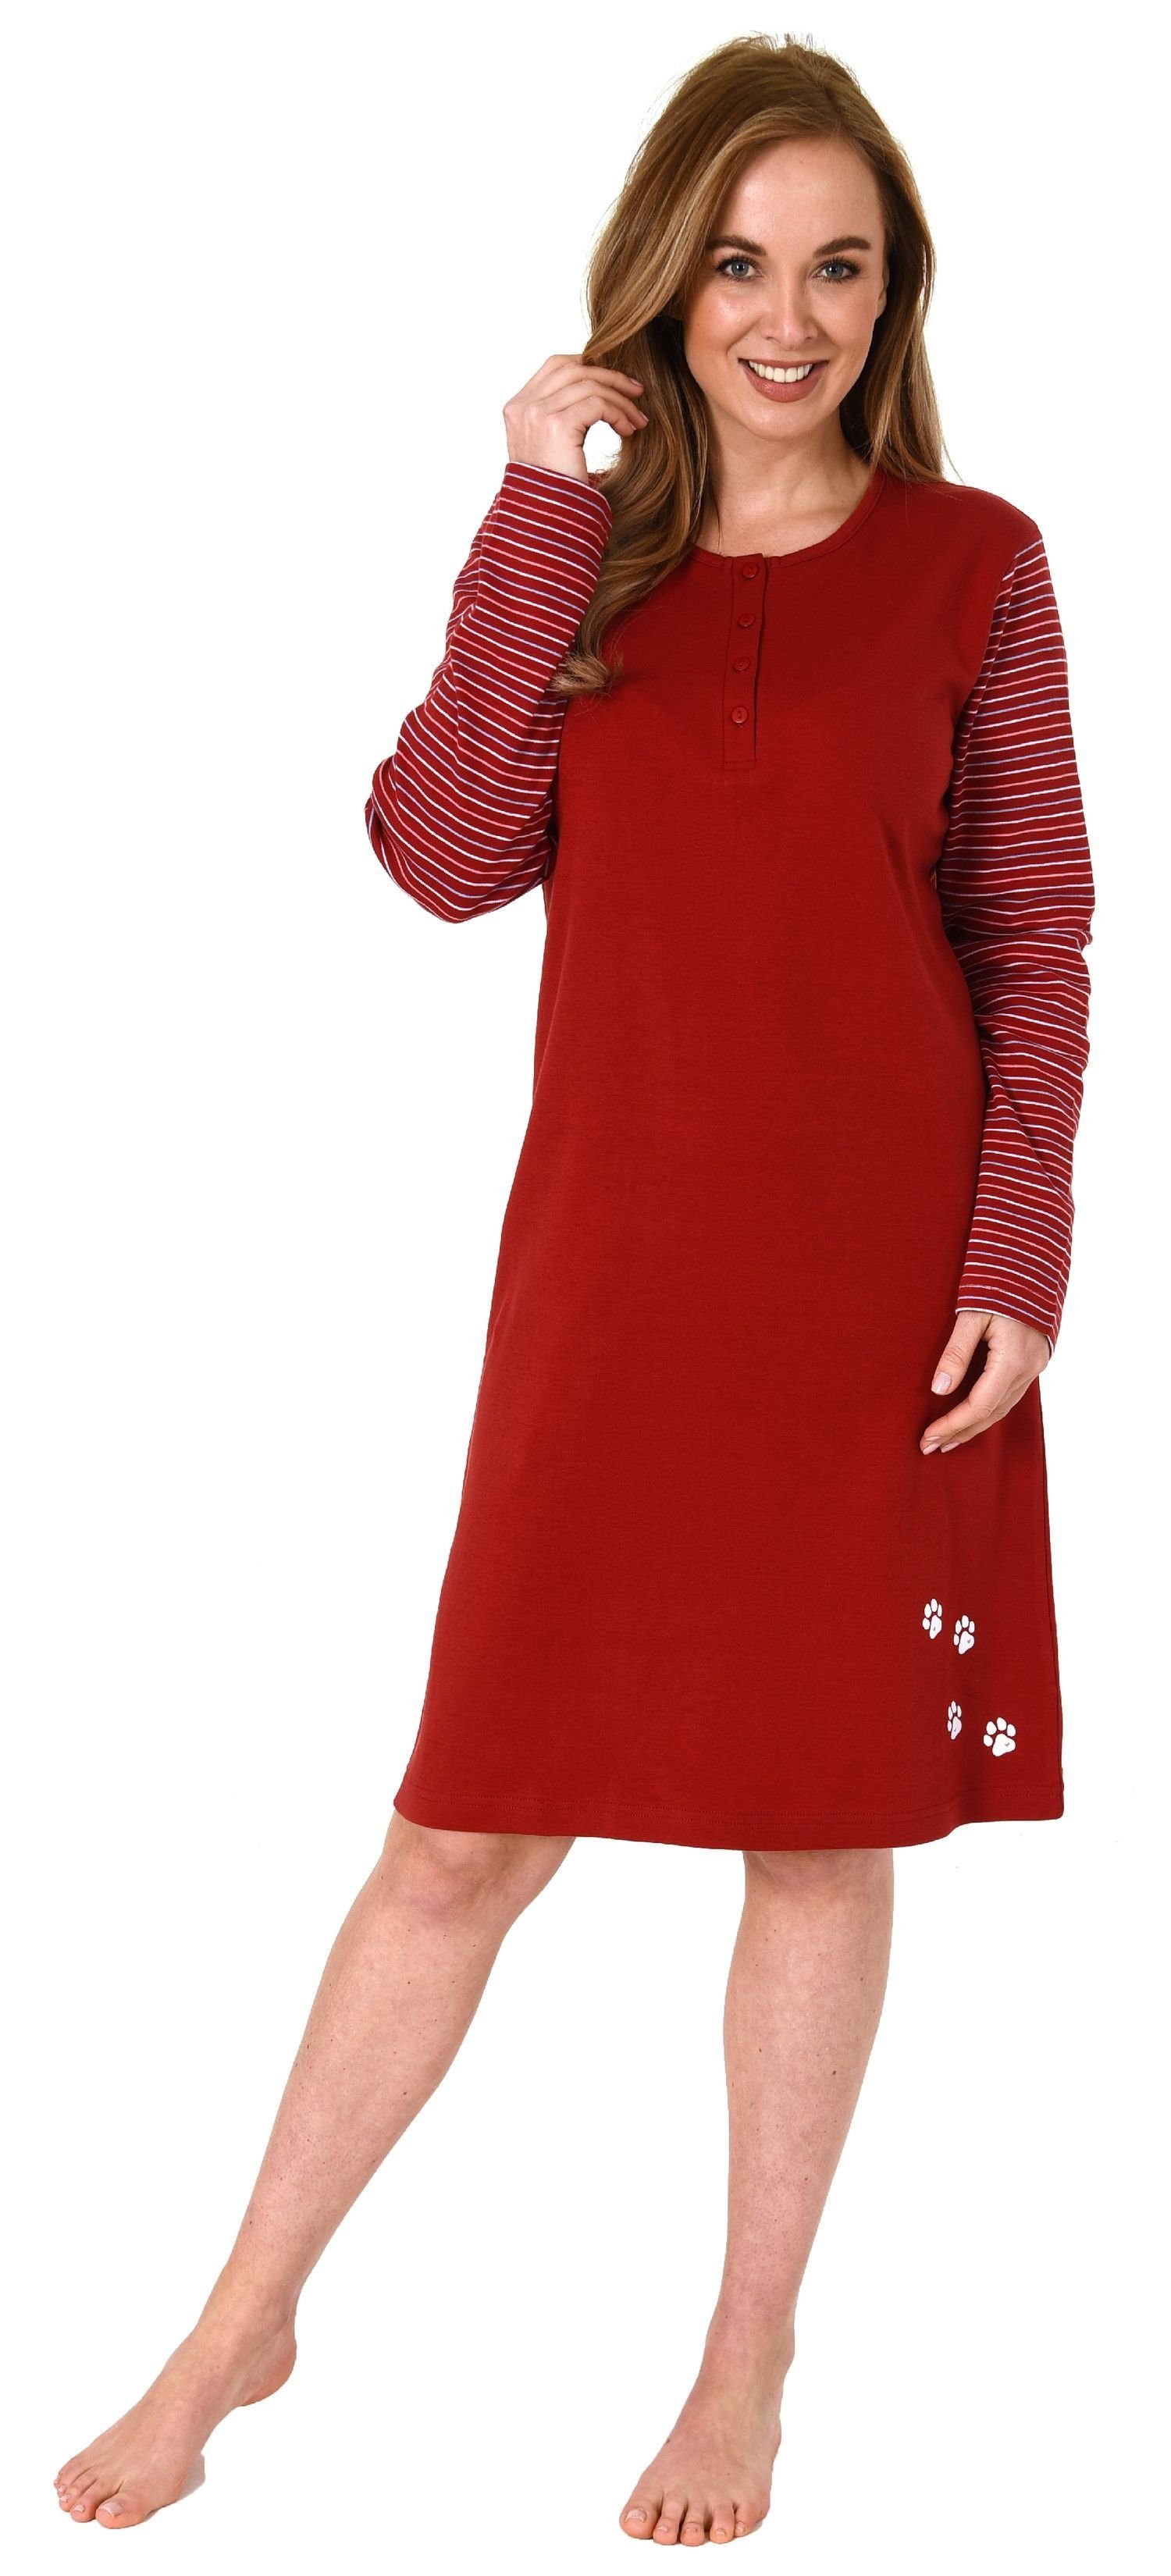 Normann Nachthemd Damen Nachthemd langarm in Kuschel Interlock Qualität rot